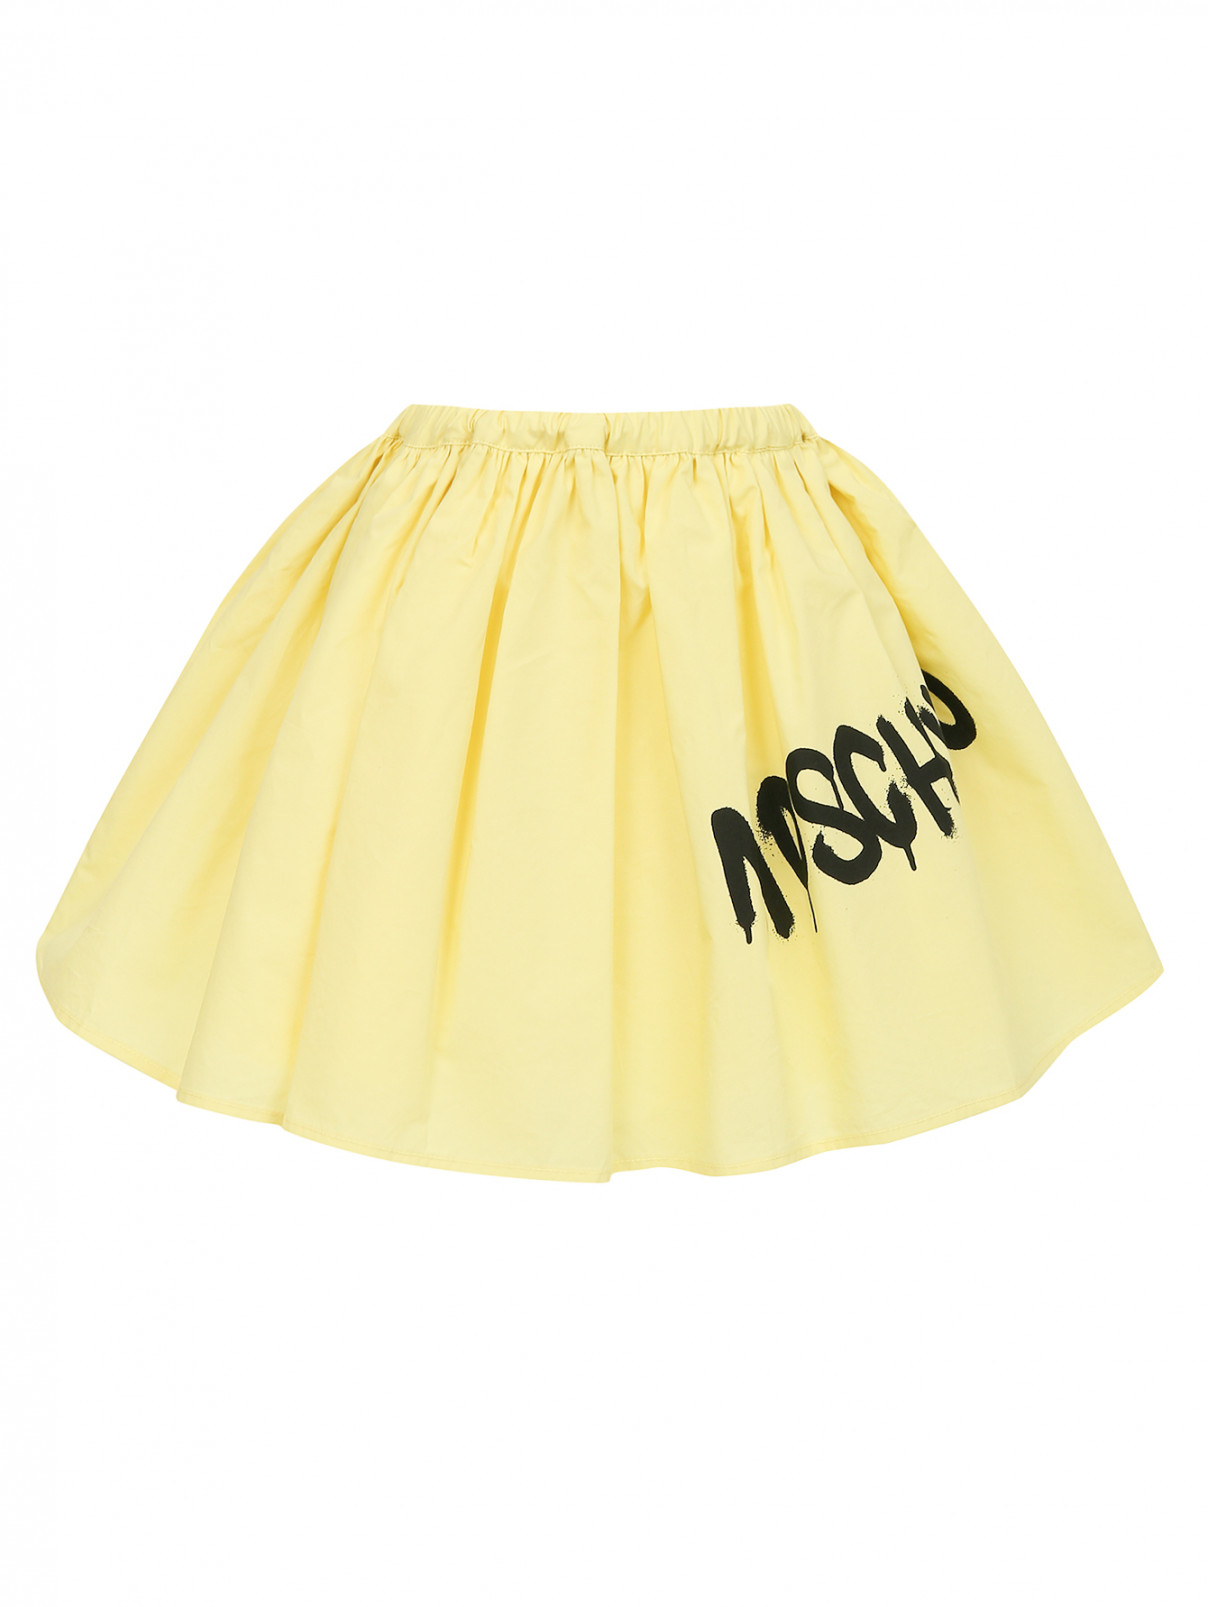 Юбка мини из хлопка Moschino Teen  –  Общий вид  – Цвет:  Желтый